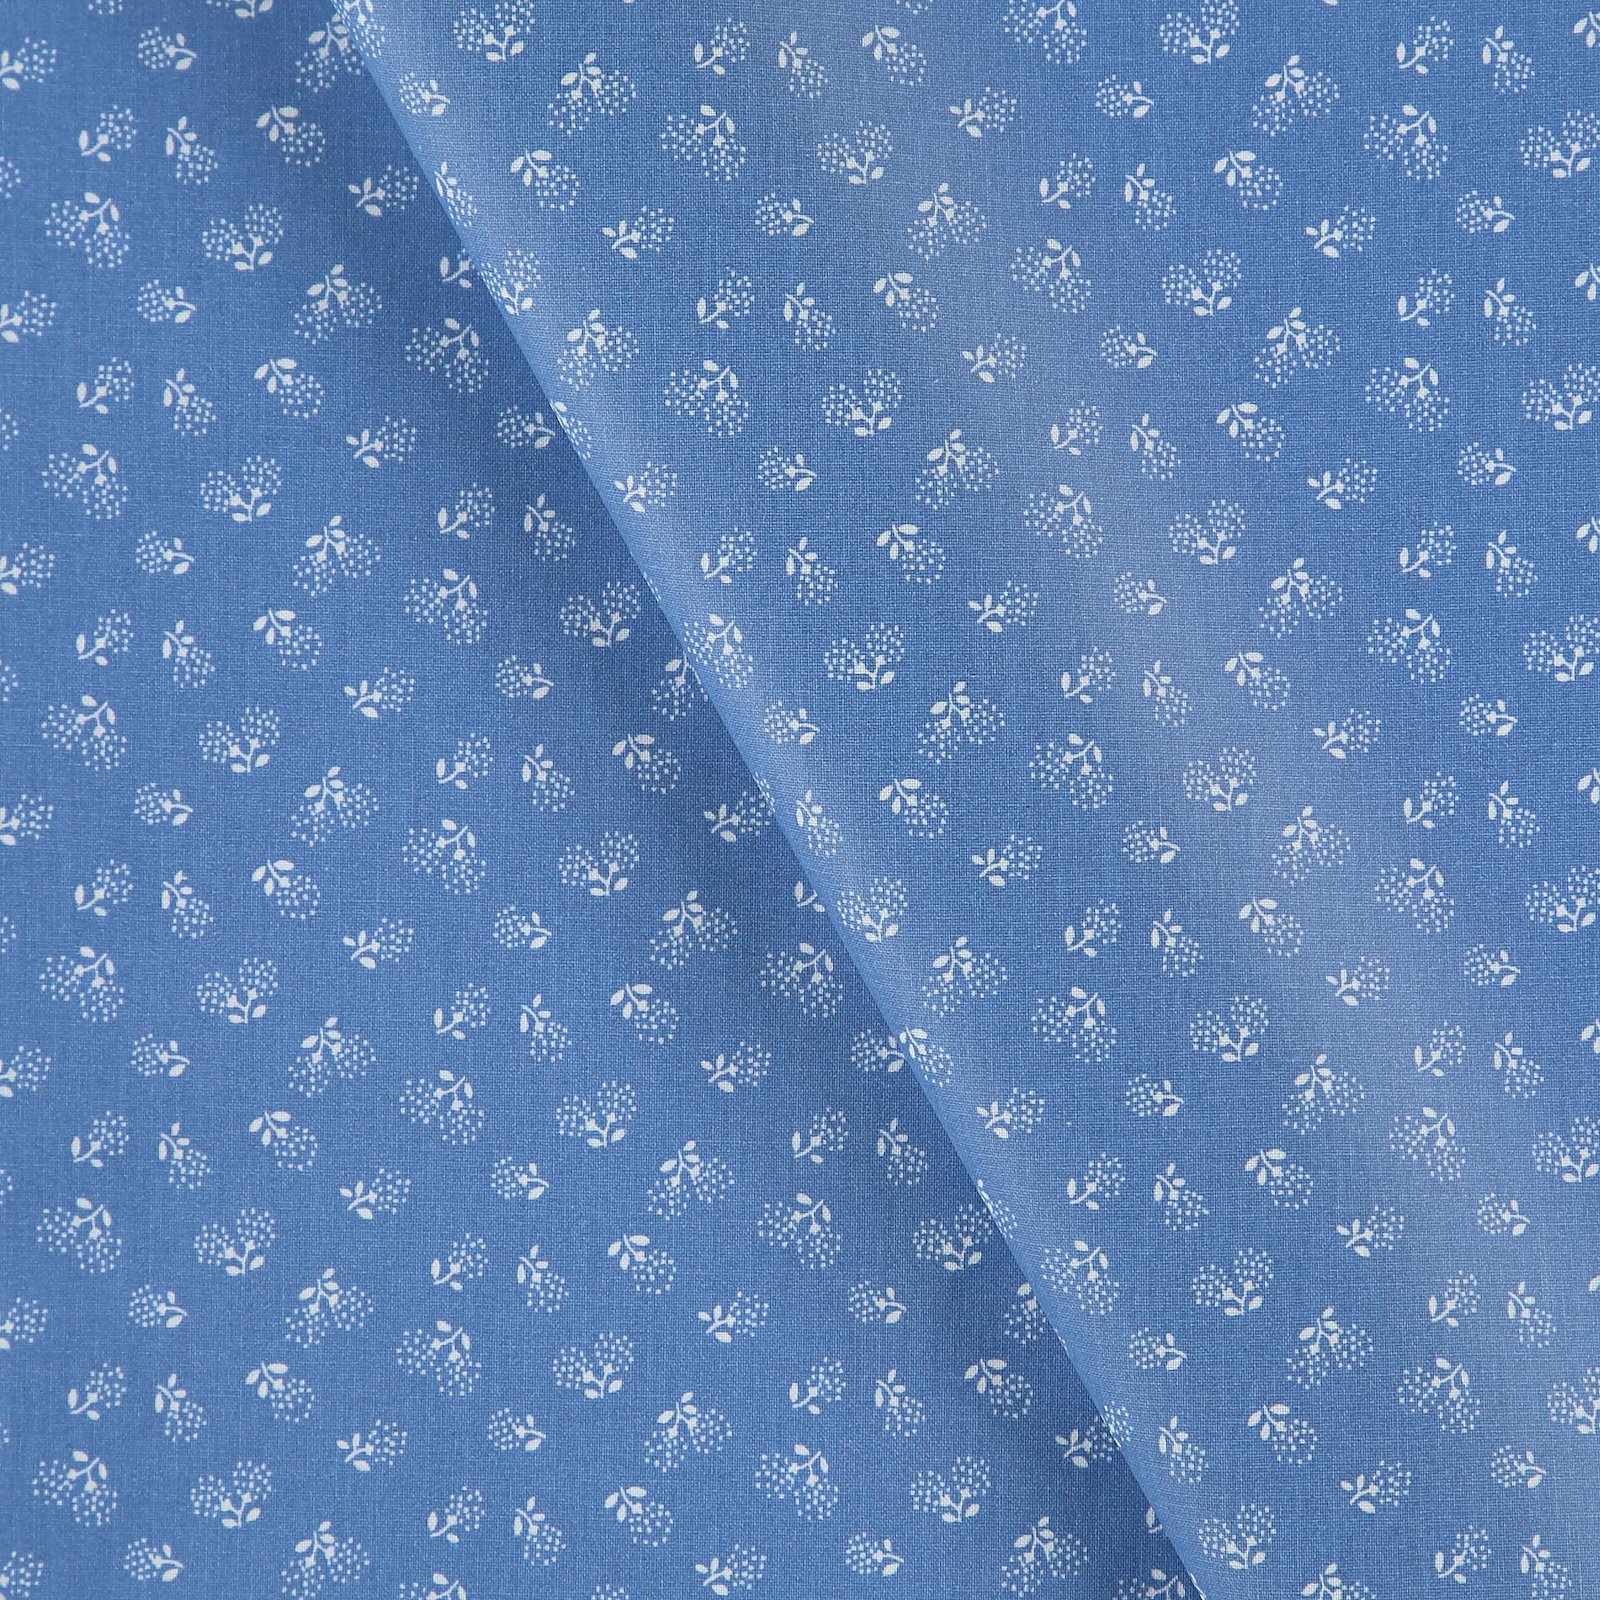 Tekstilvoksduk kobolt blå m blomster 866120_pack